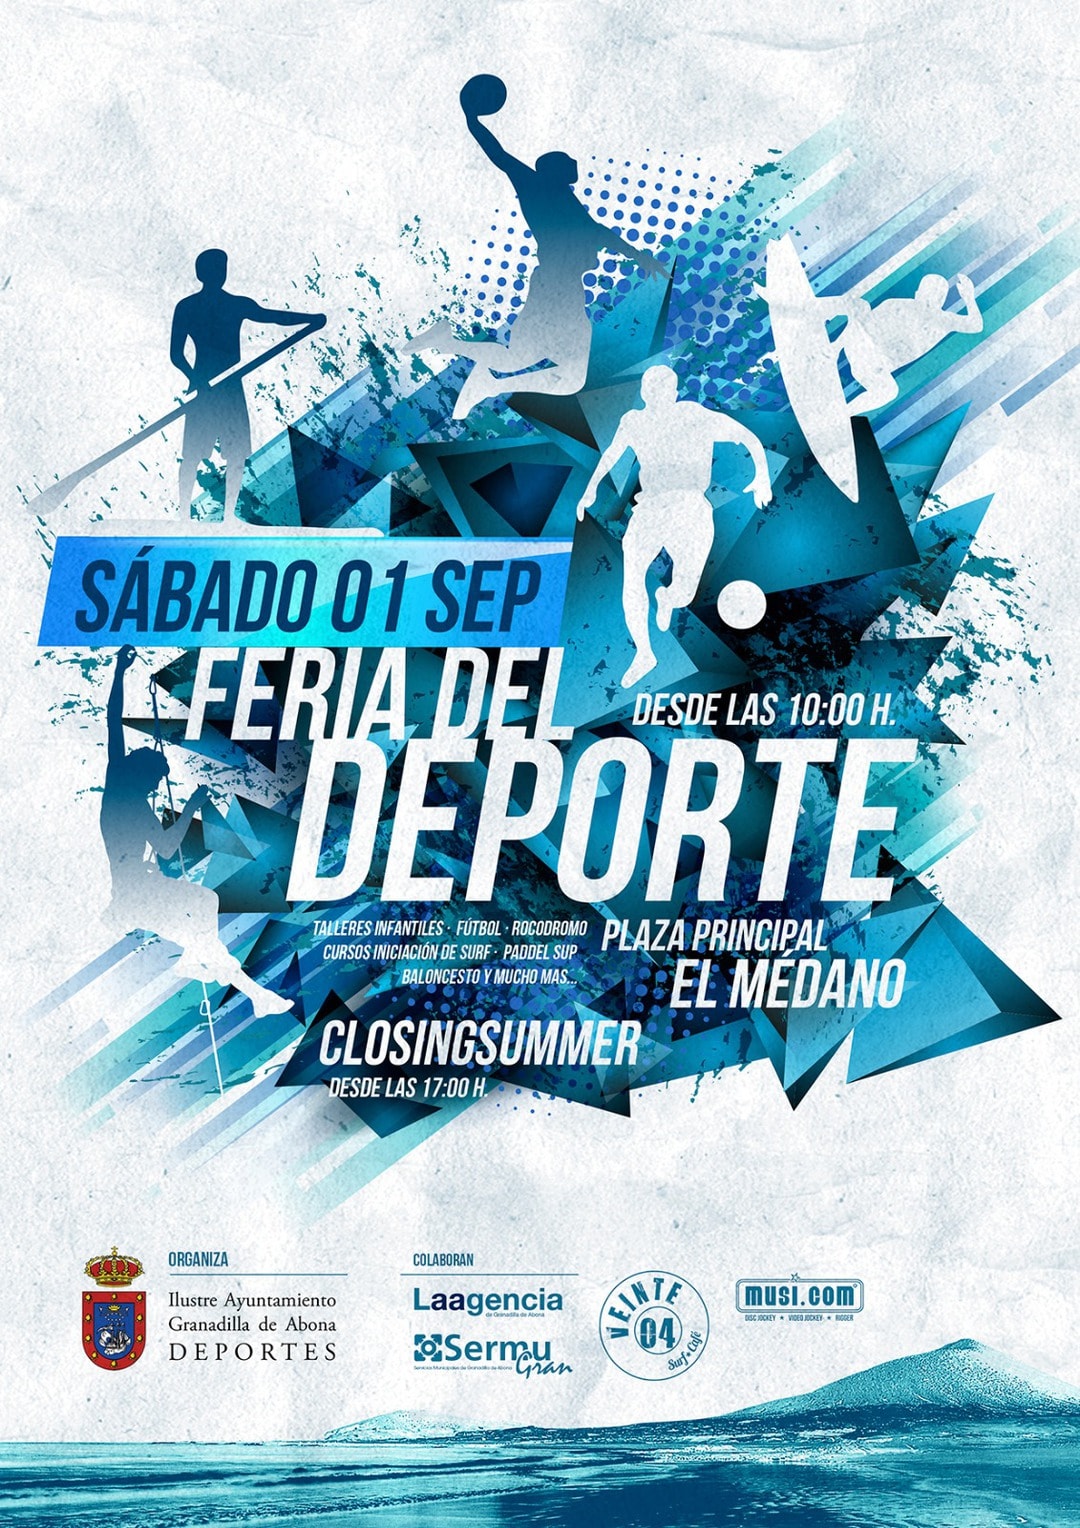 La ‘Feria del Deporte 2018’ y ‘Closing Summer’, este sábado en El Médano